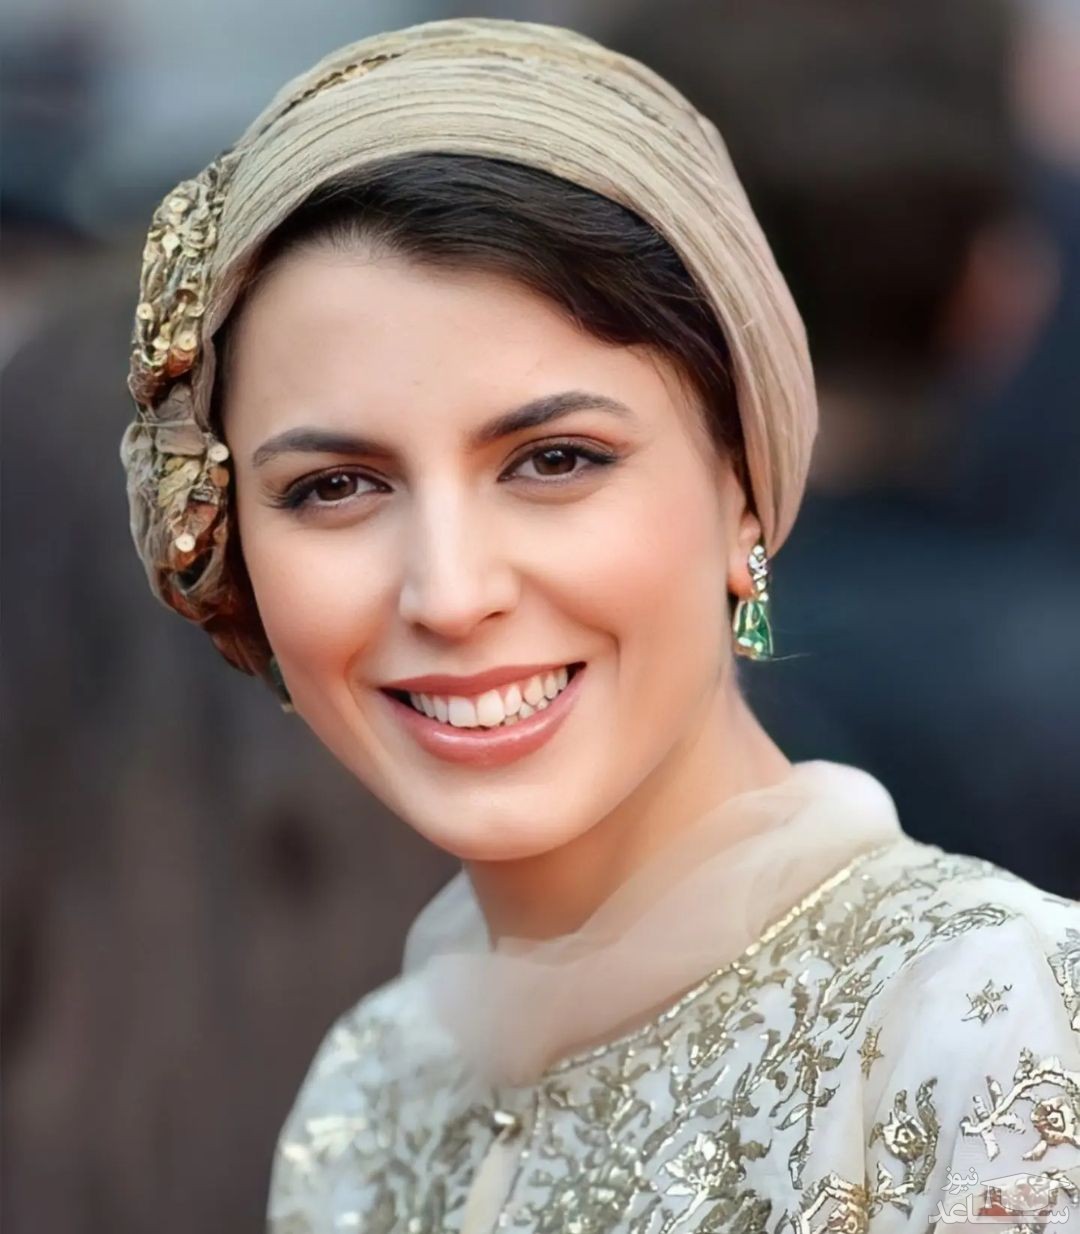 خوشبختی از نگاه لیلا حاتمی، بانوی زیباروی و نحیف سینمای ایران